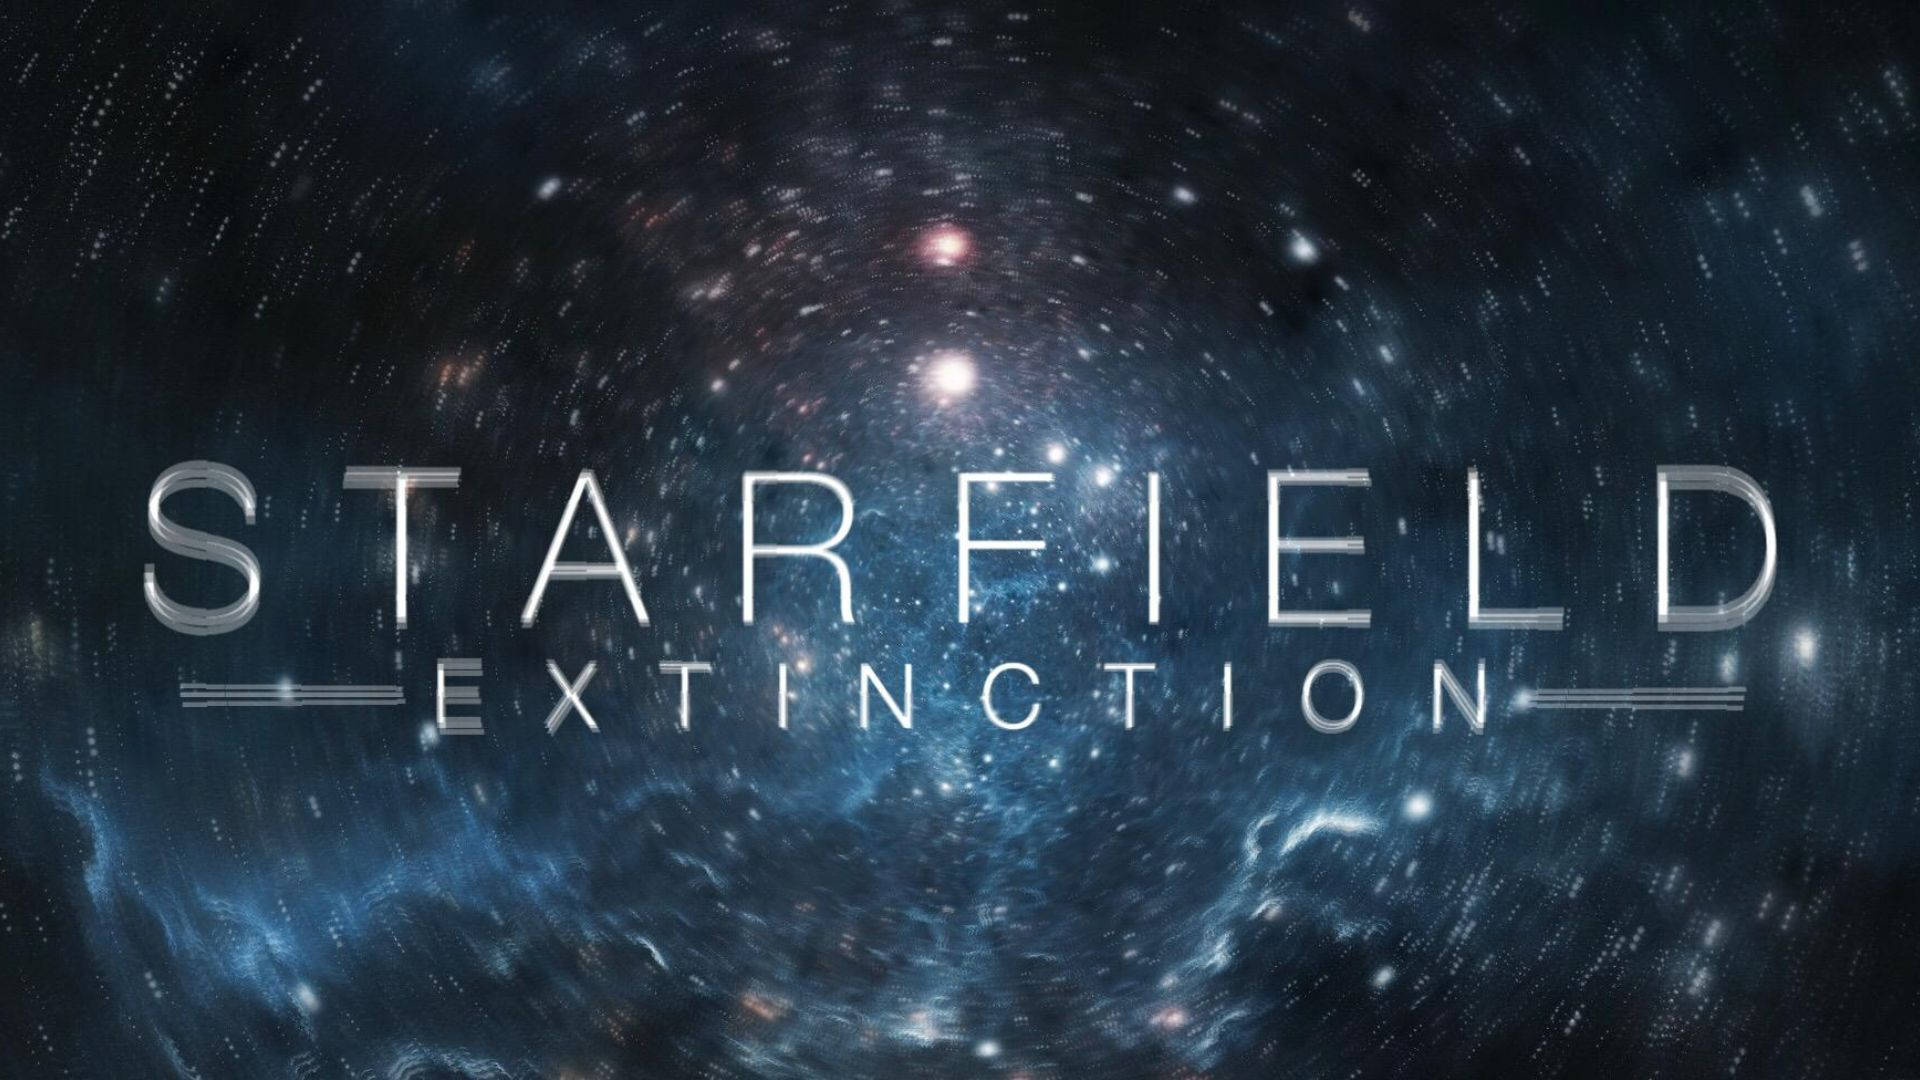 Starfield Extinction In Galaxy Background